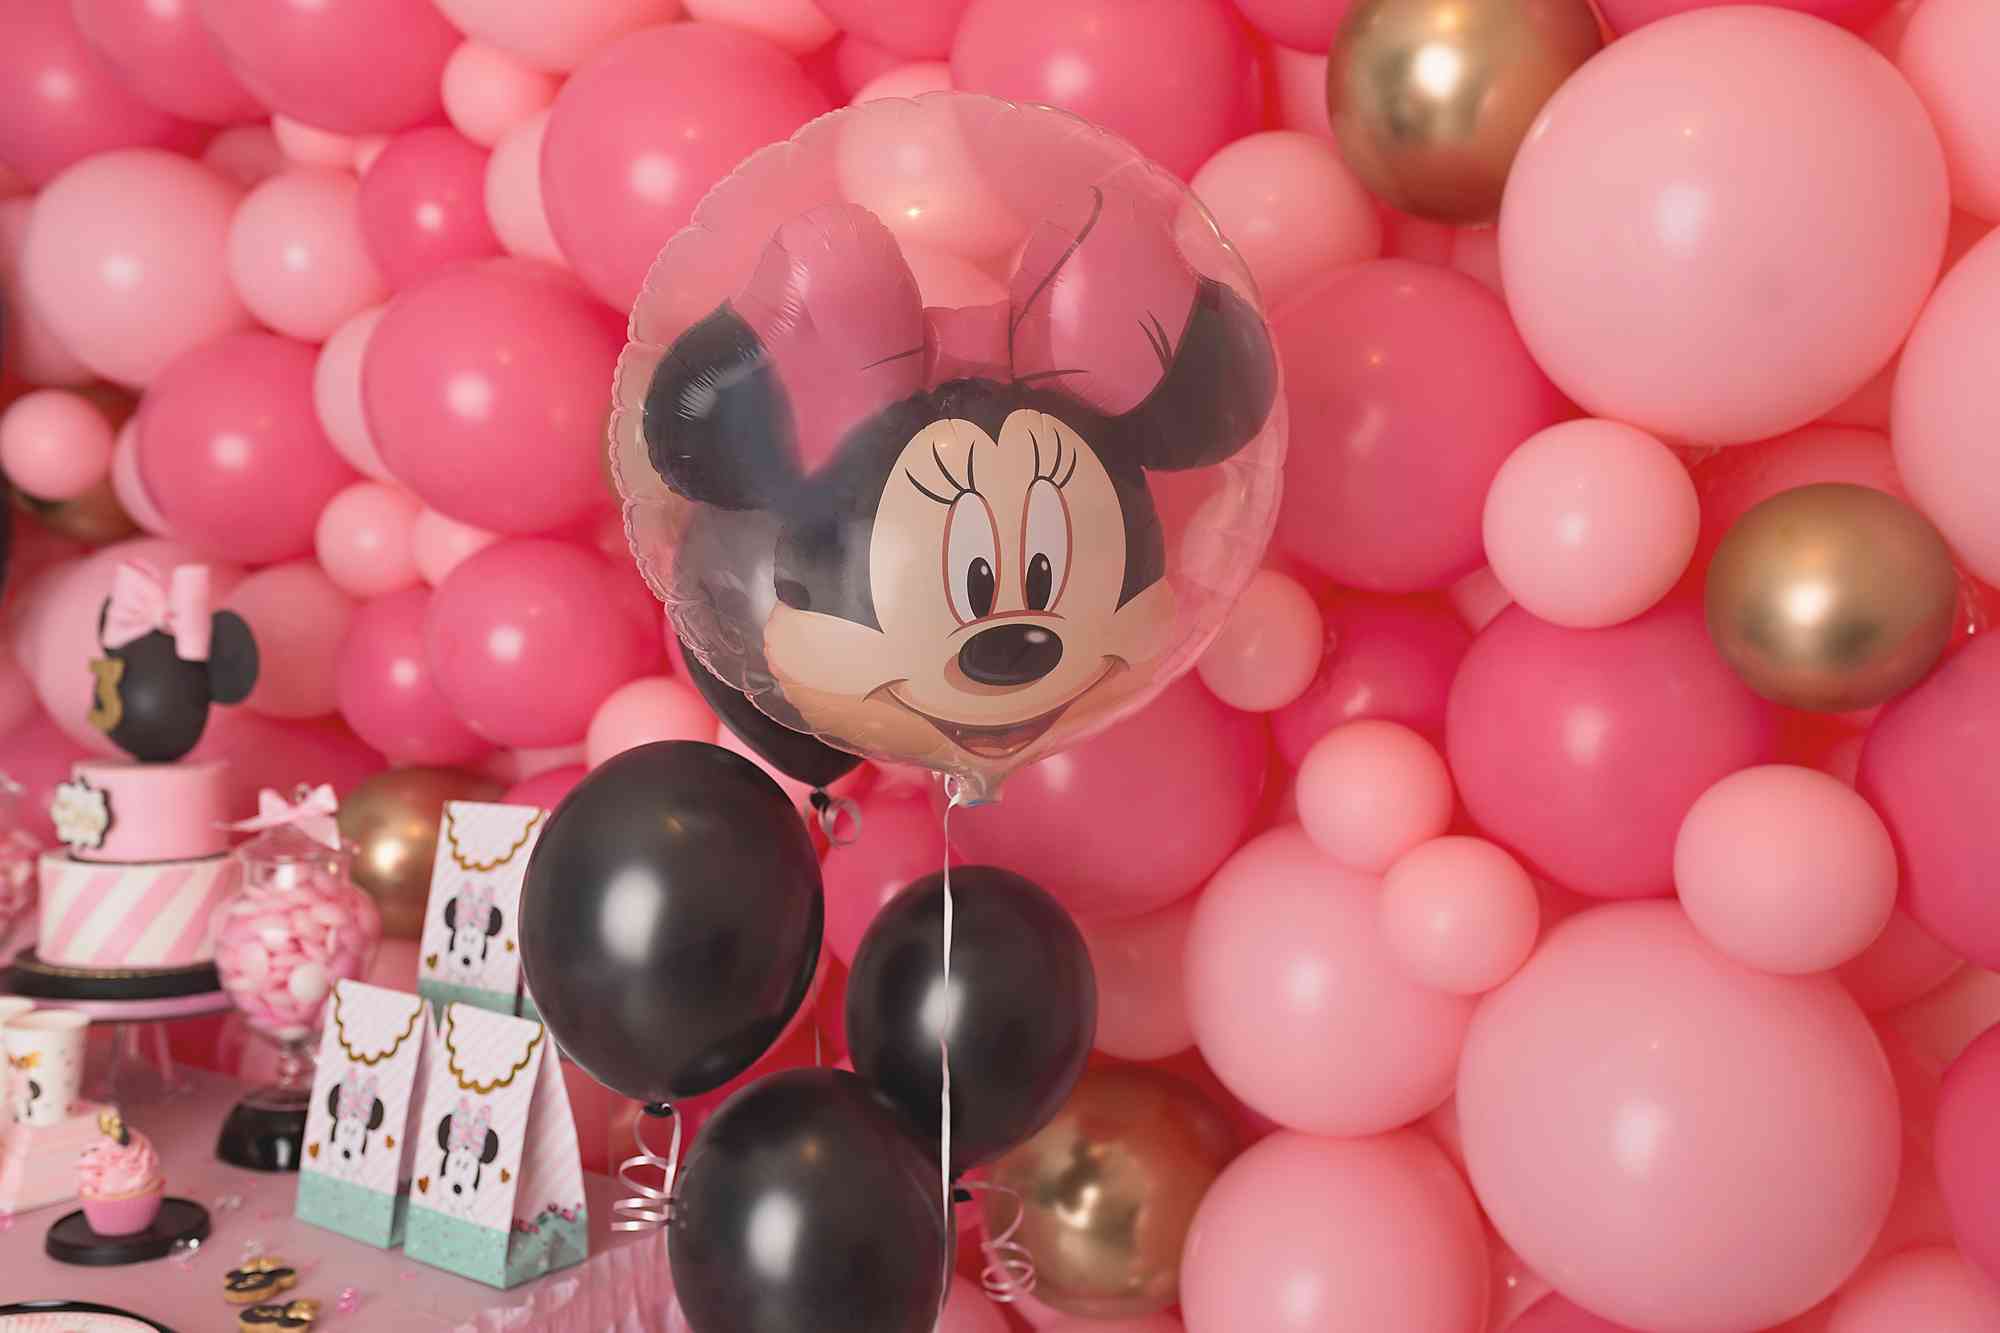 Ballon Hélium Rond Minnie Mouse - 43 cm - Jour de Fête - Minnie - LICENCES  ET THEMES